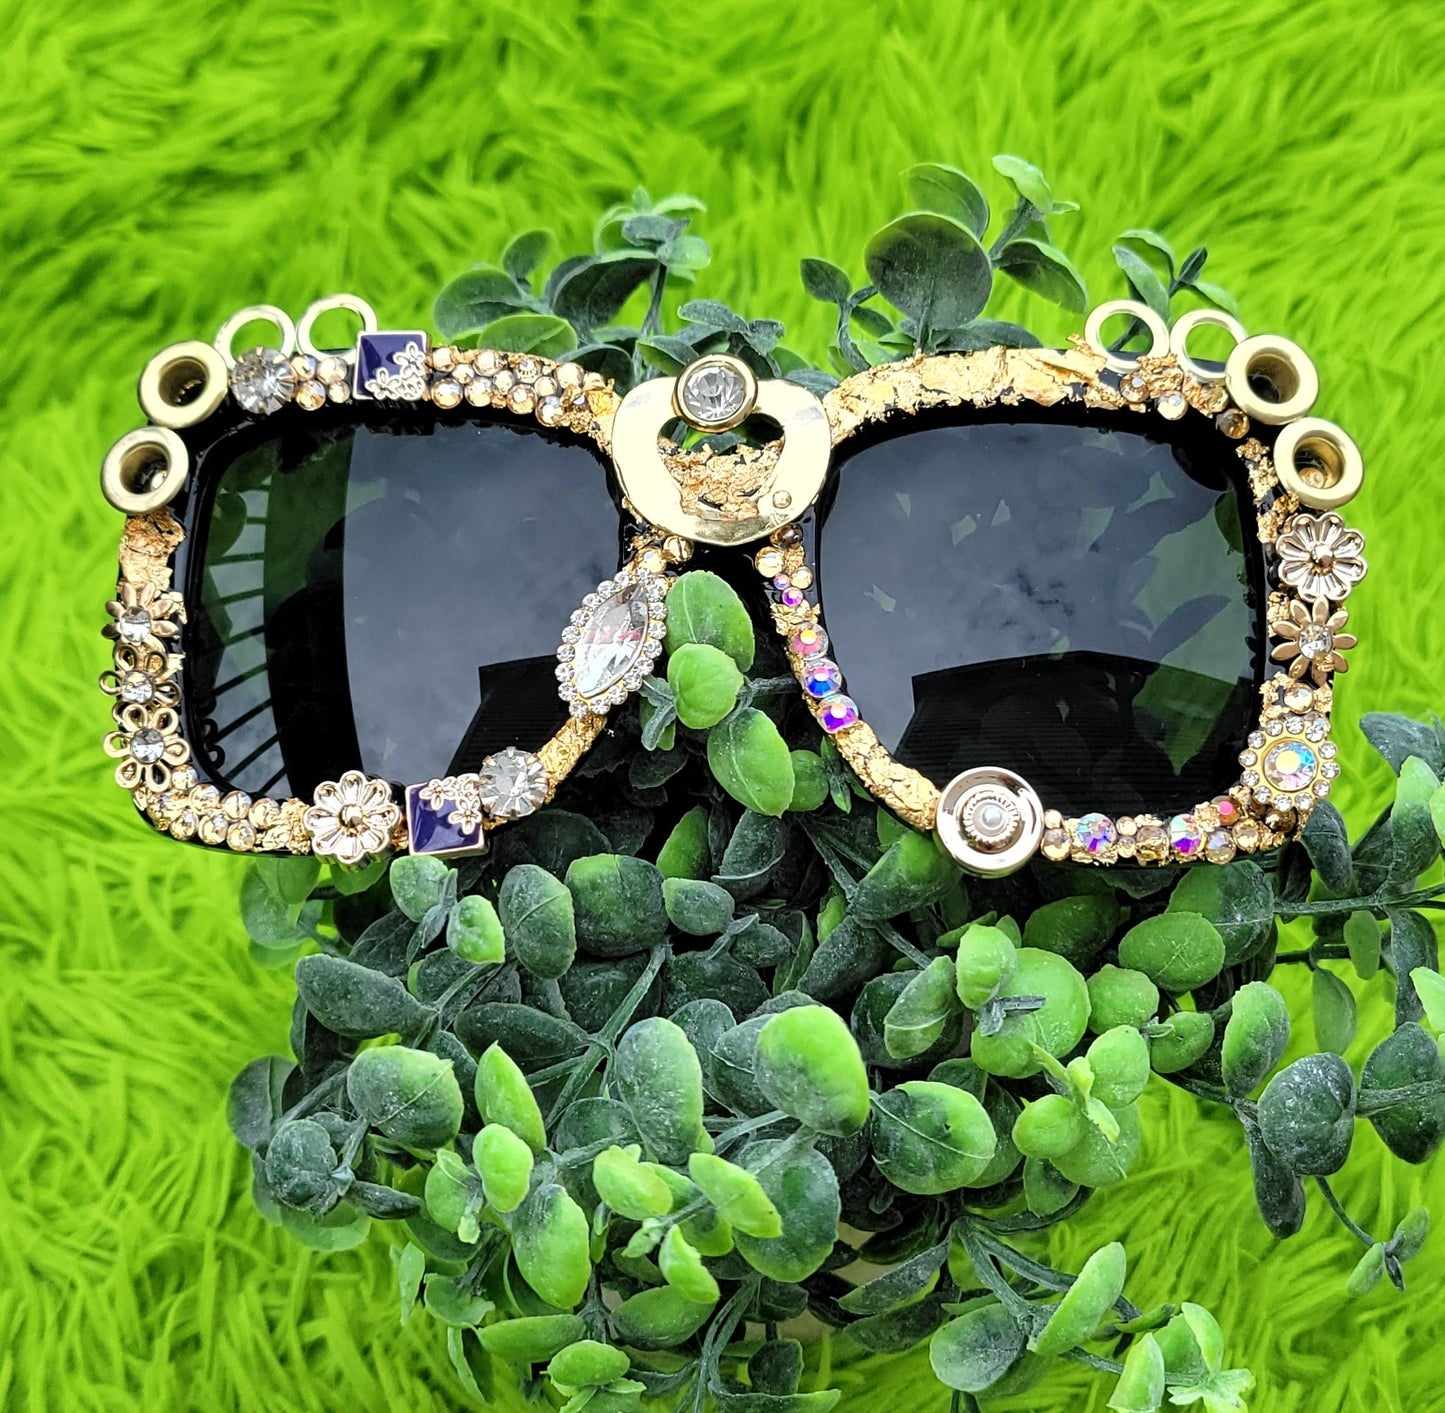 "Badazzled Sunglasses – Polarized UV Protection for Women and Men's Designer Fashion Eyewear"